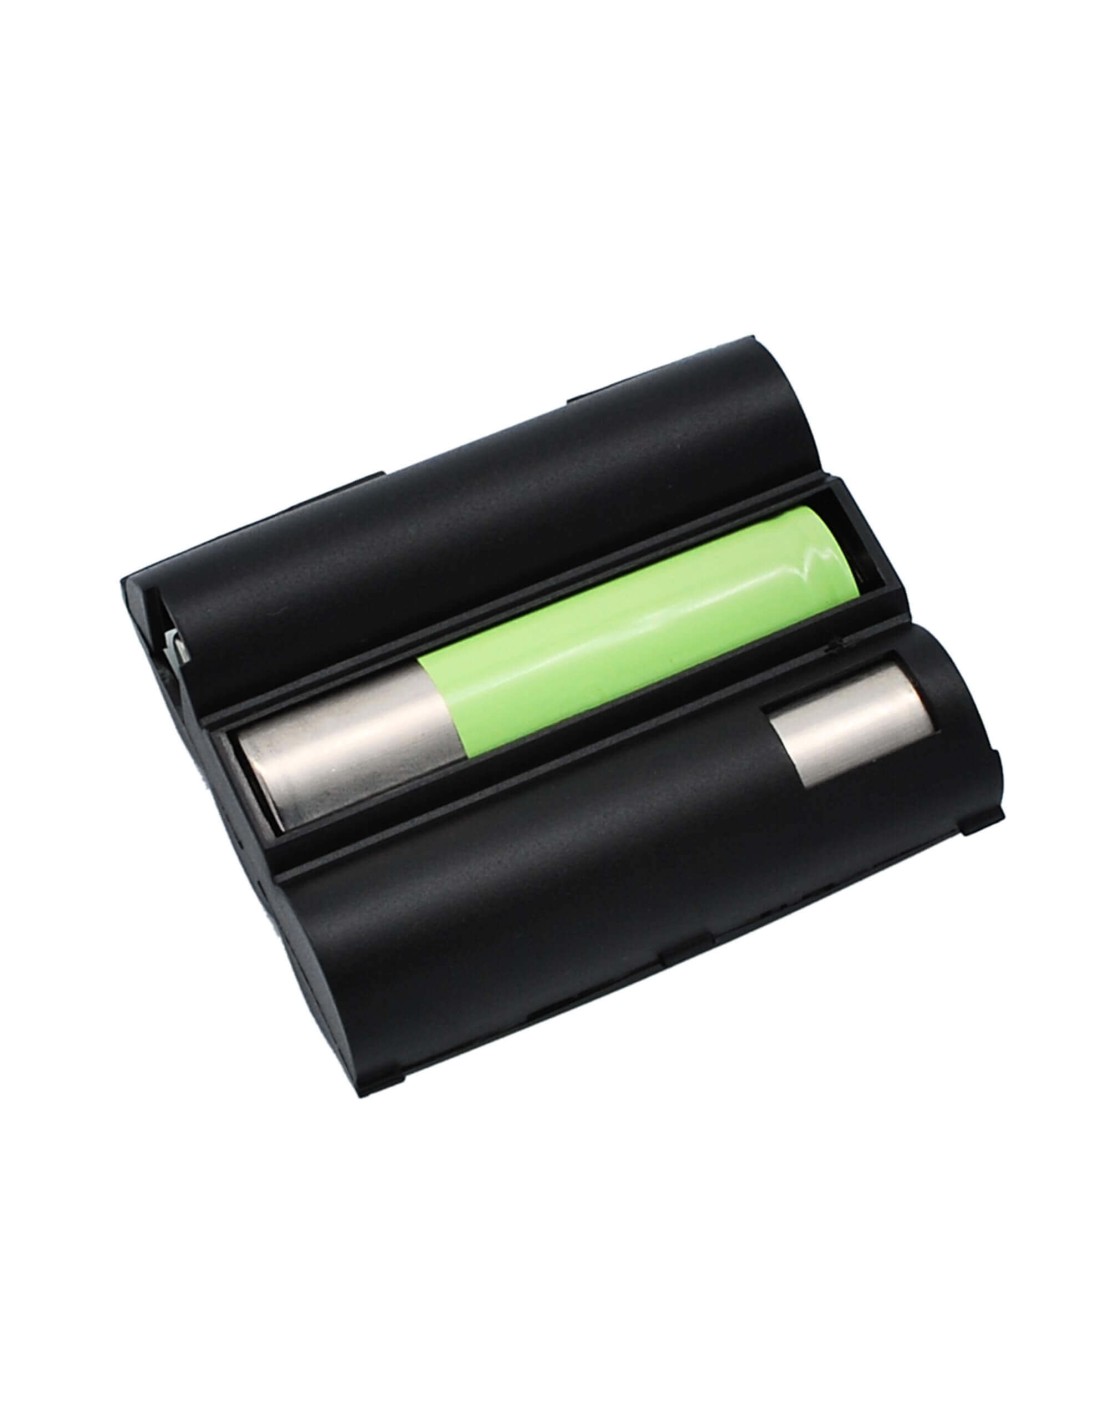 Battery for Bang & Olufsen, Beocom 5000 3.6V, 1200mAh - 4.32Wh